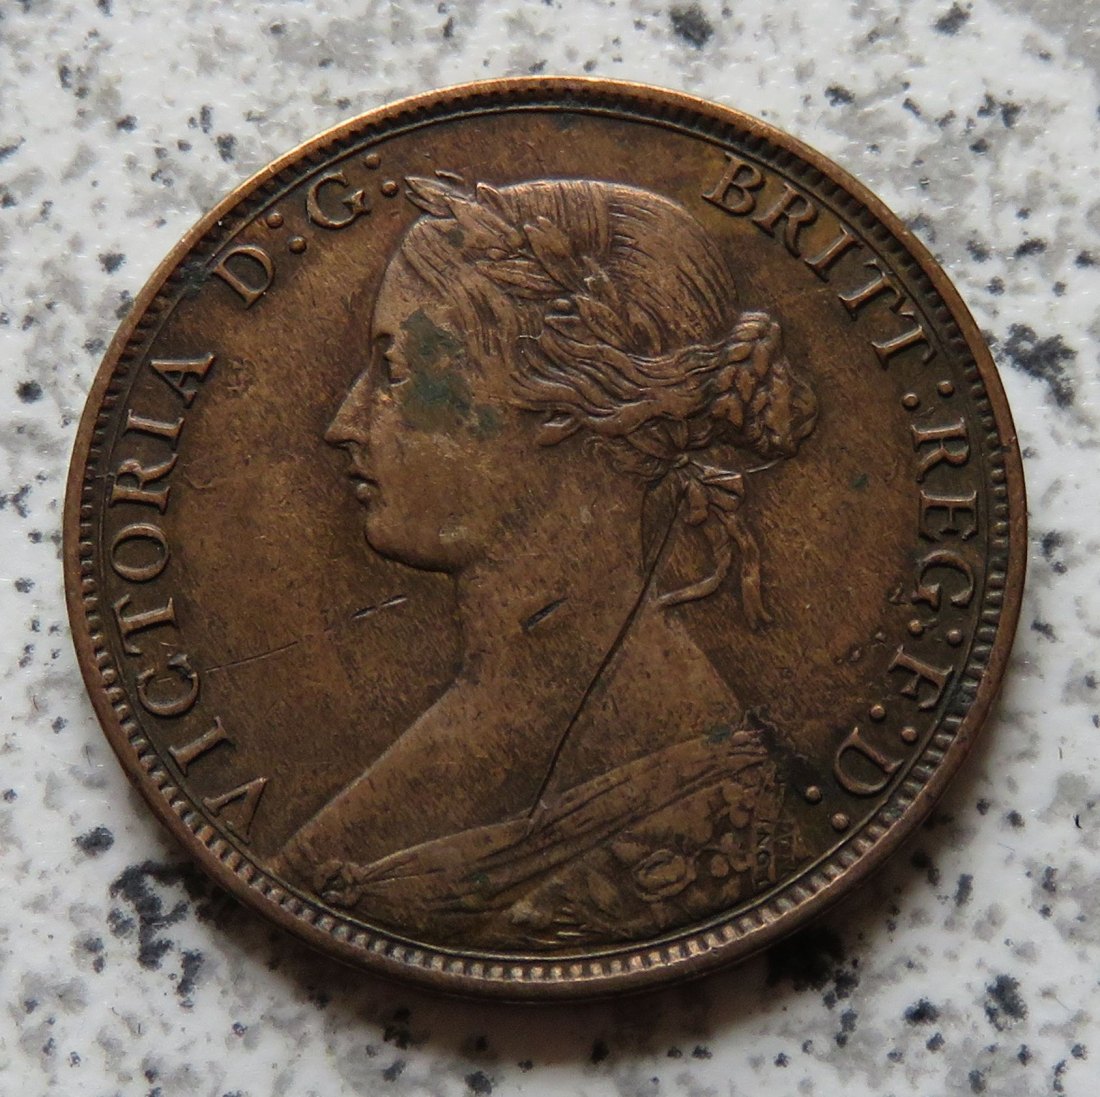  Großbritannien half Penny 1866 / 1/2 Penny 1866   